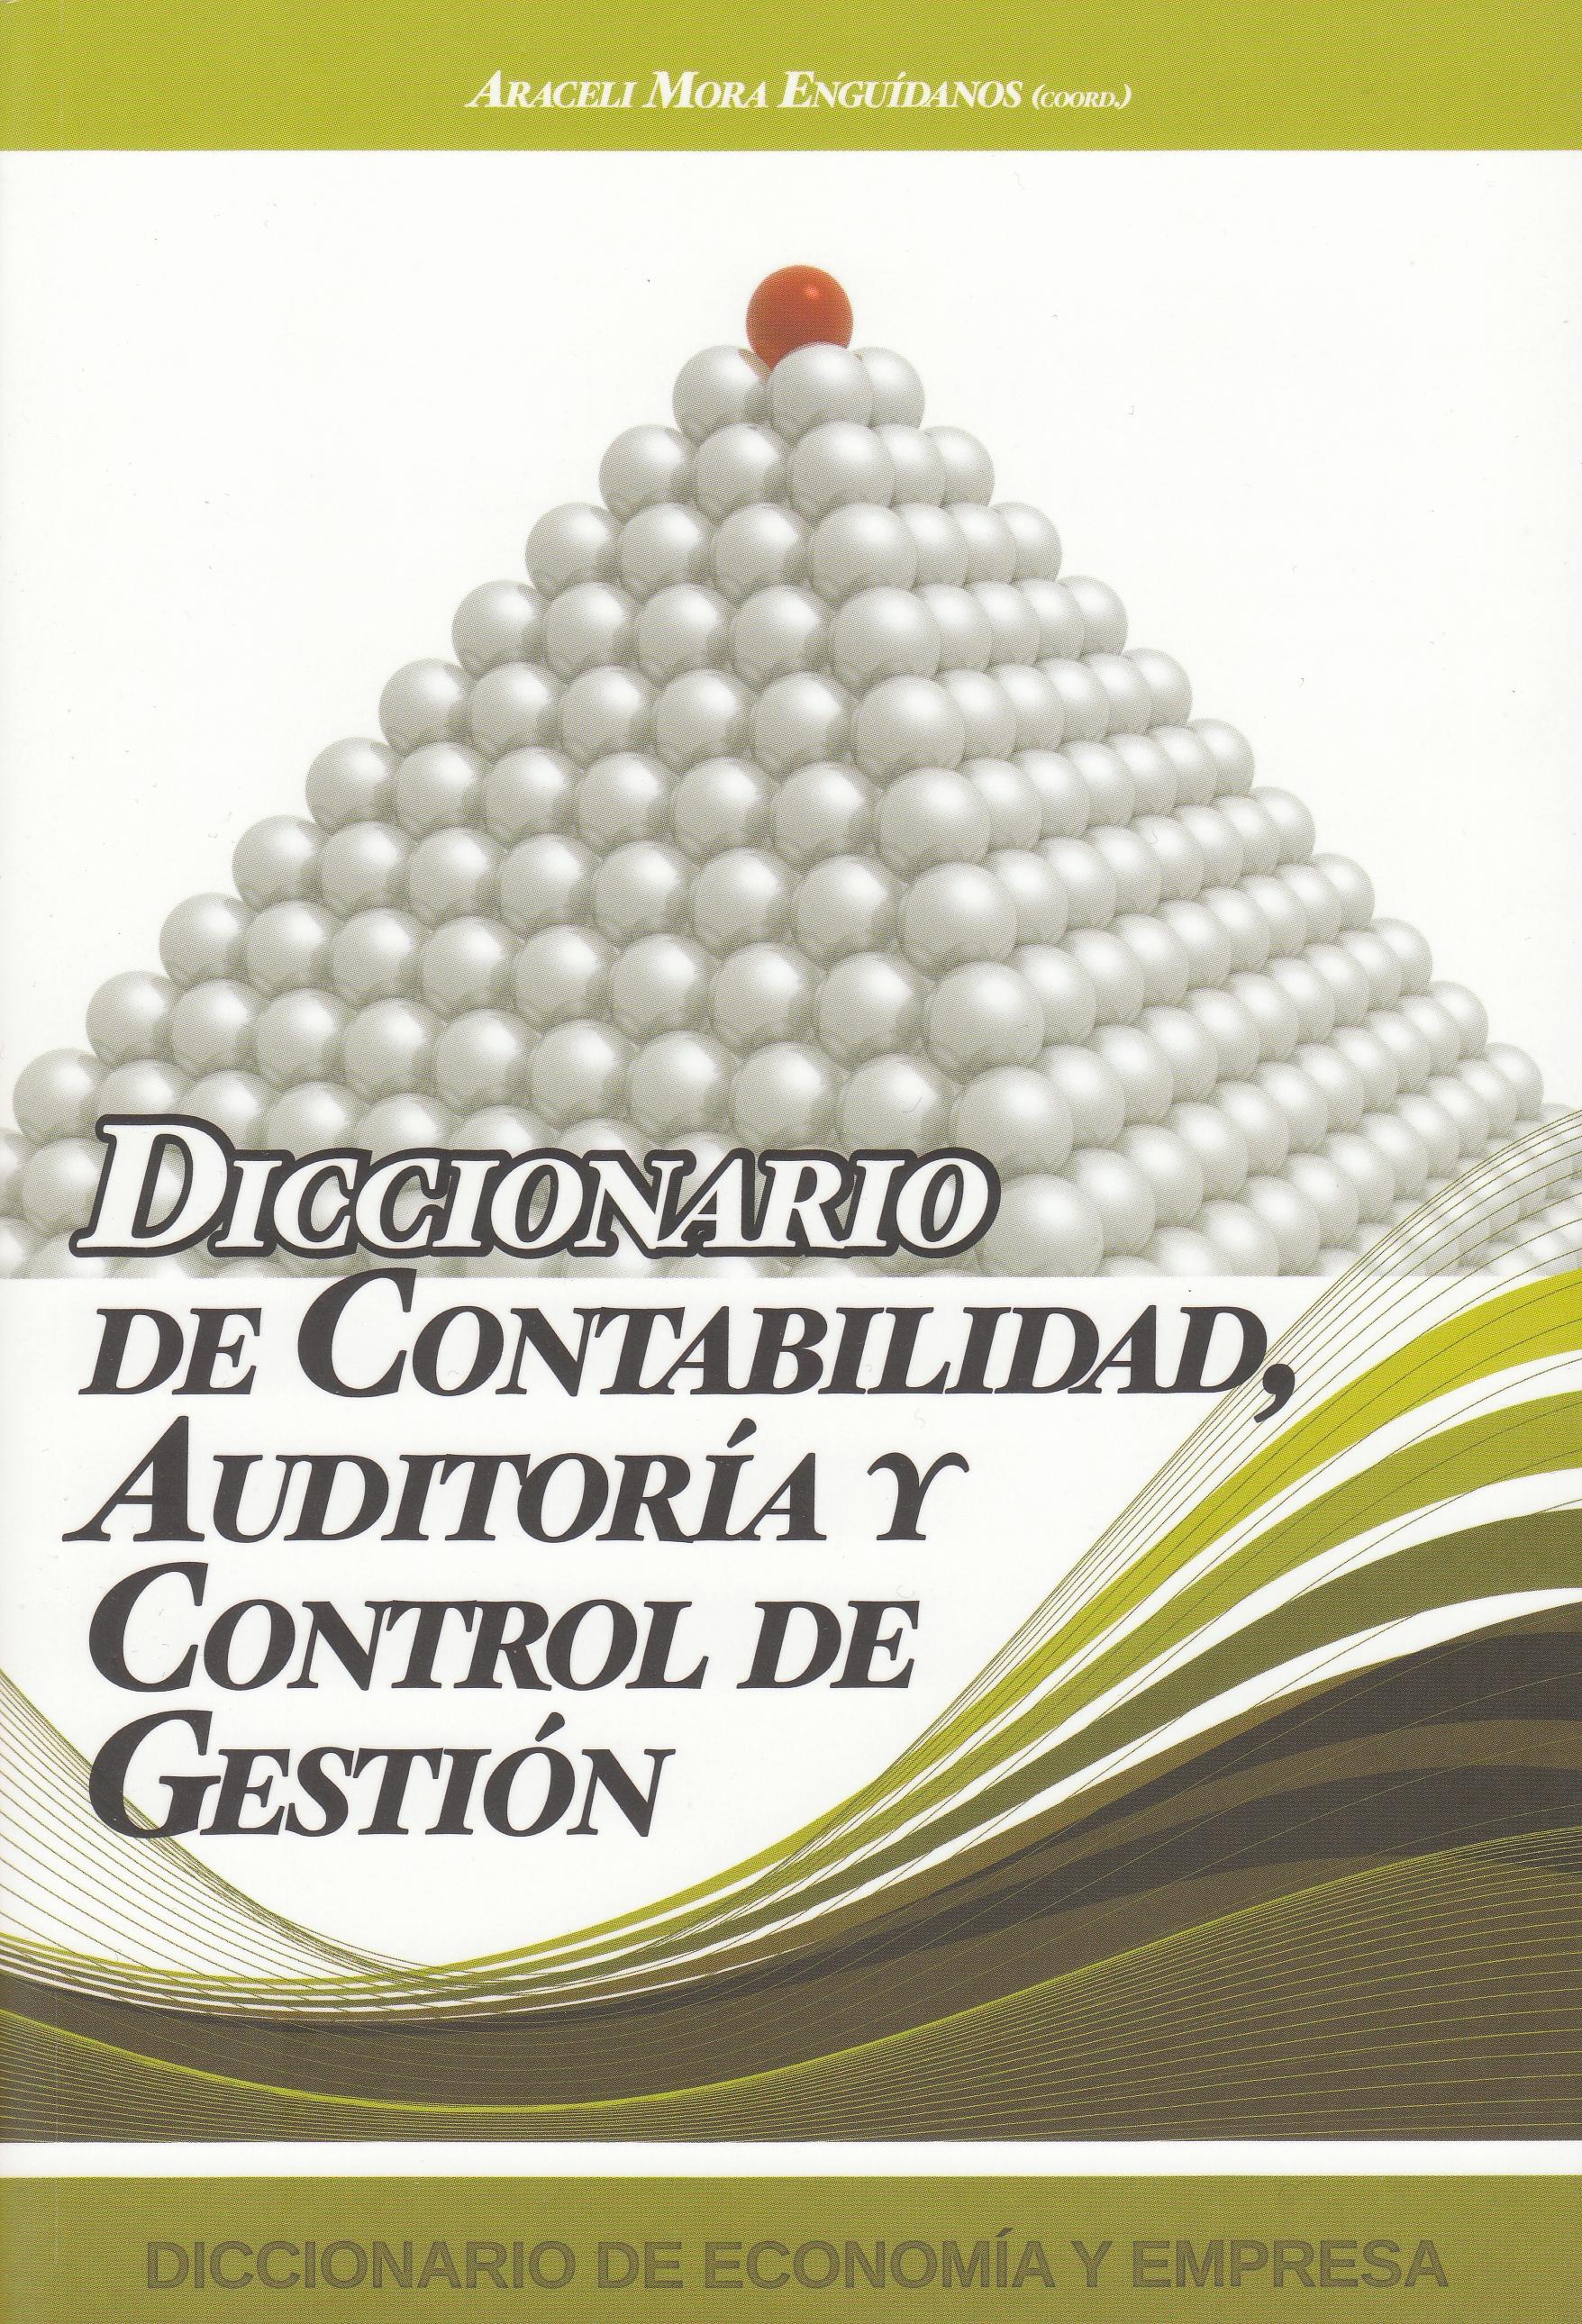 Diccionario de Contabilidad, Auditoria y Control de Gestion.